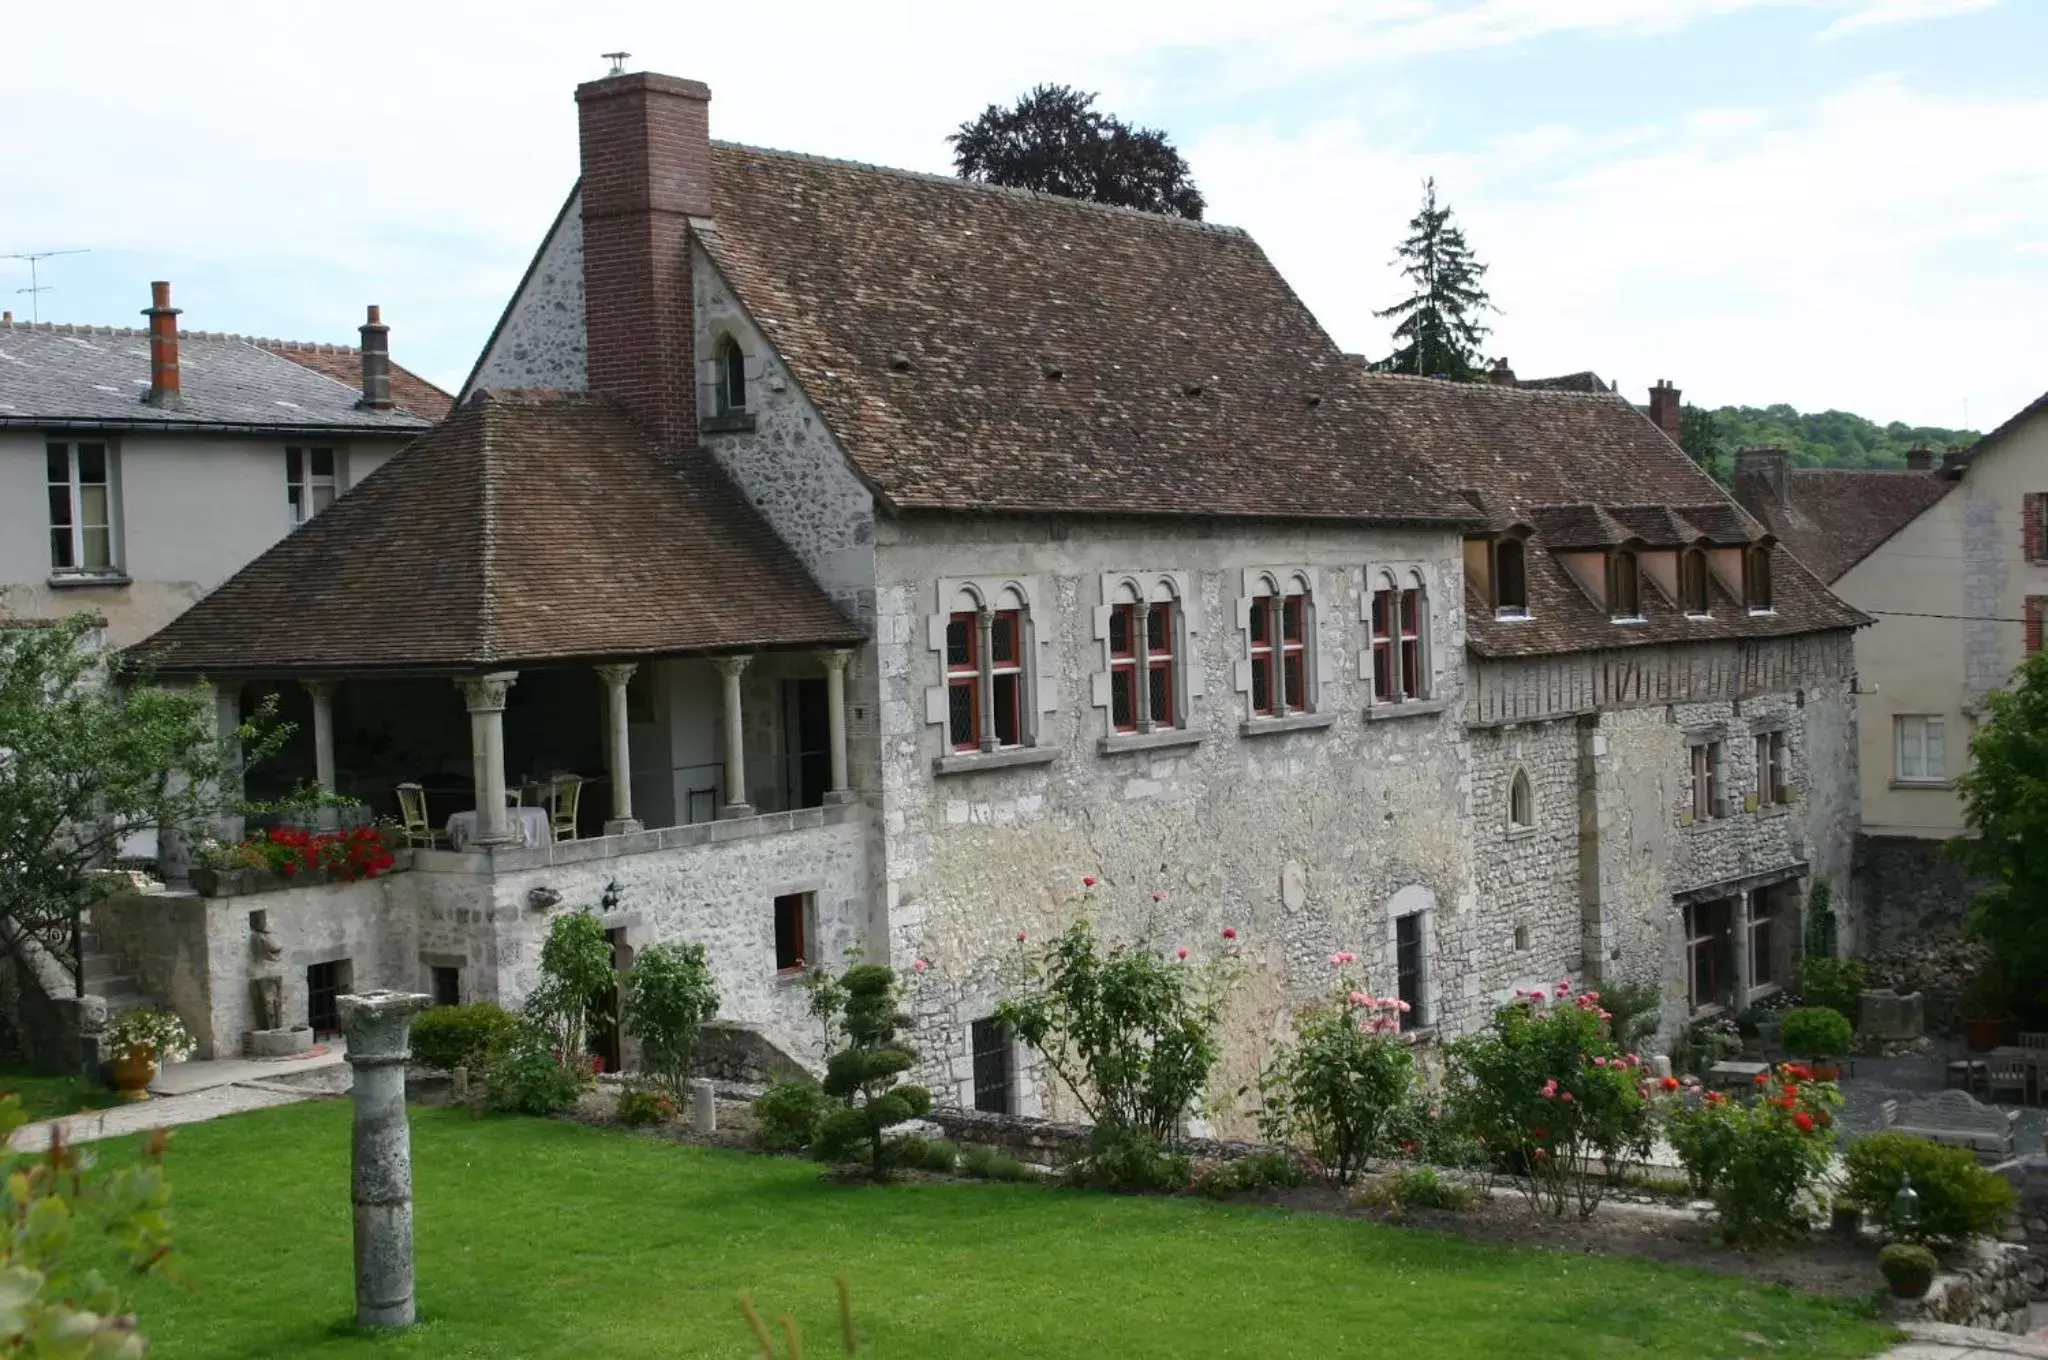 Property Building in Demeure des Vieux Bains